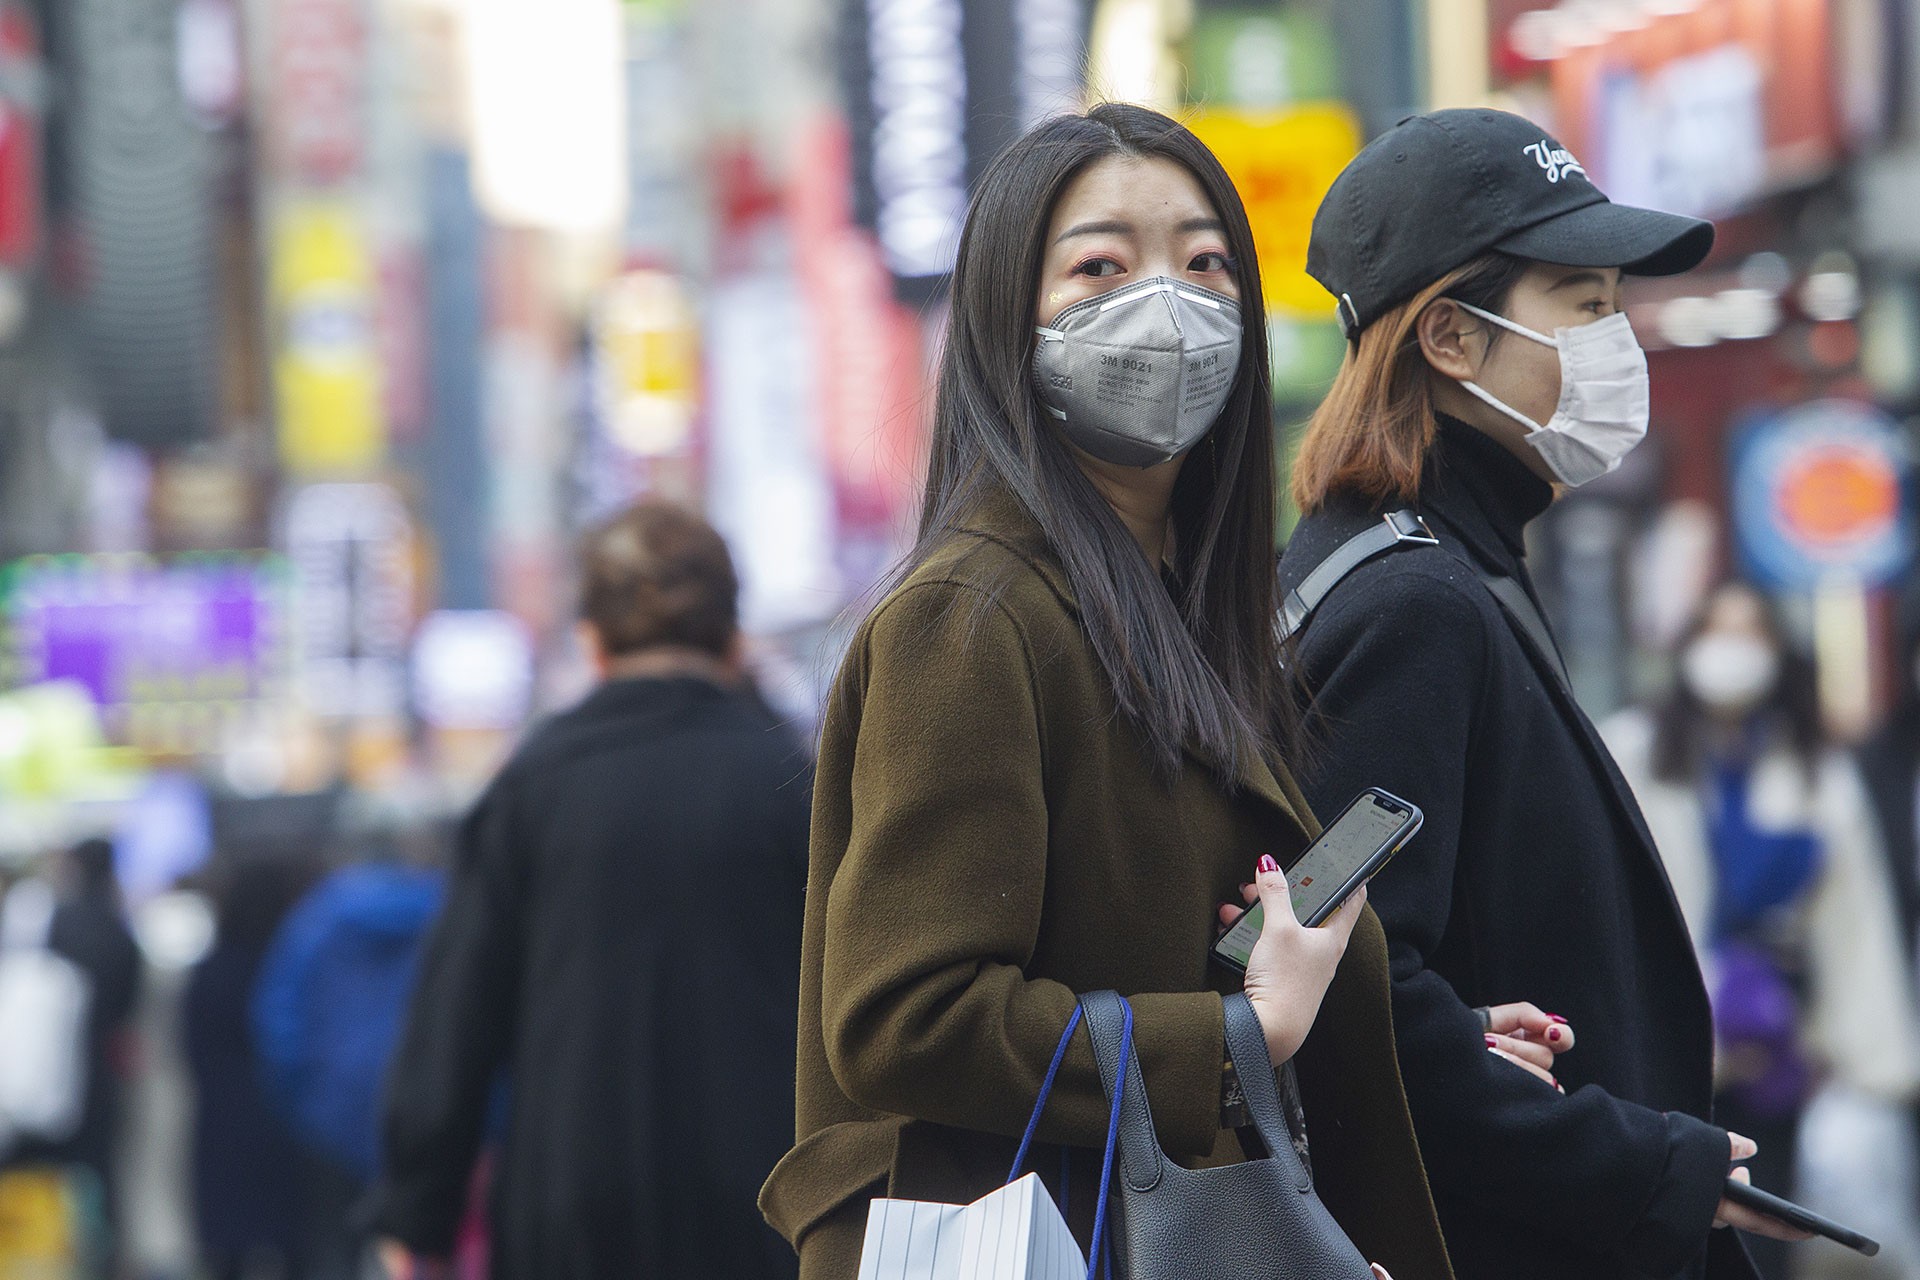 NASA Açıkladı: Koronavirüs Çin’deki Hava Kirliliğini Azalttı